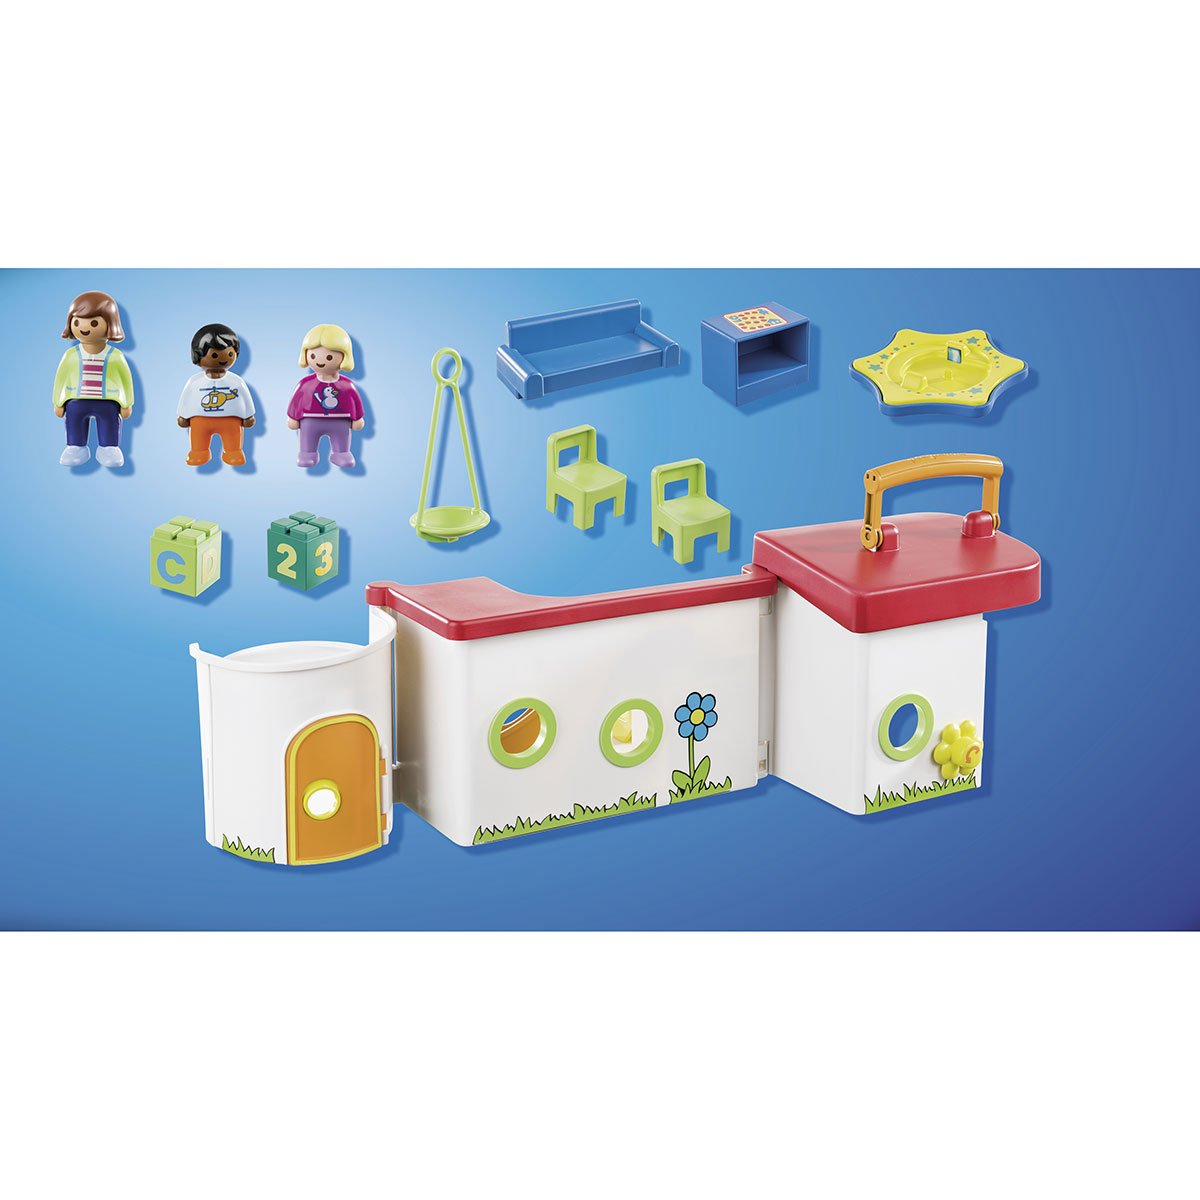 Acheter Playmobil 70399 1.2.3 Garderie transportable (février 2021) -  Joubec acheter jouets et jeux au Québec et Canada - Achat en ligne